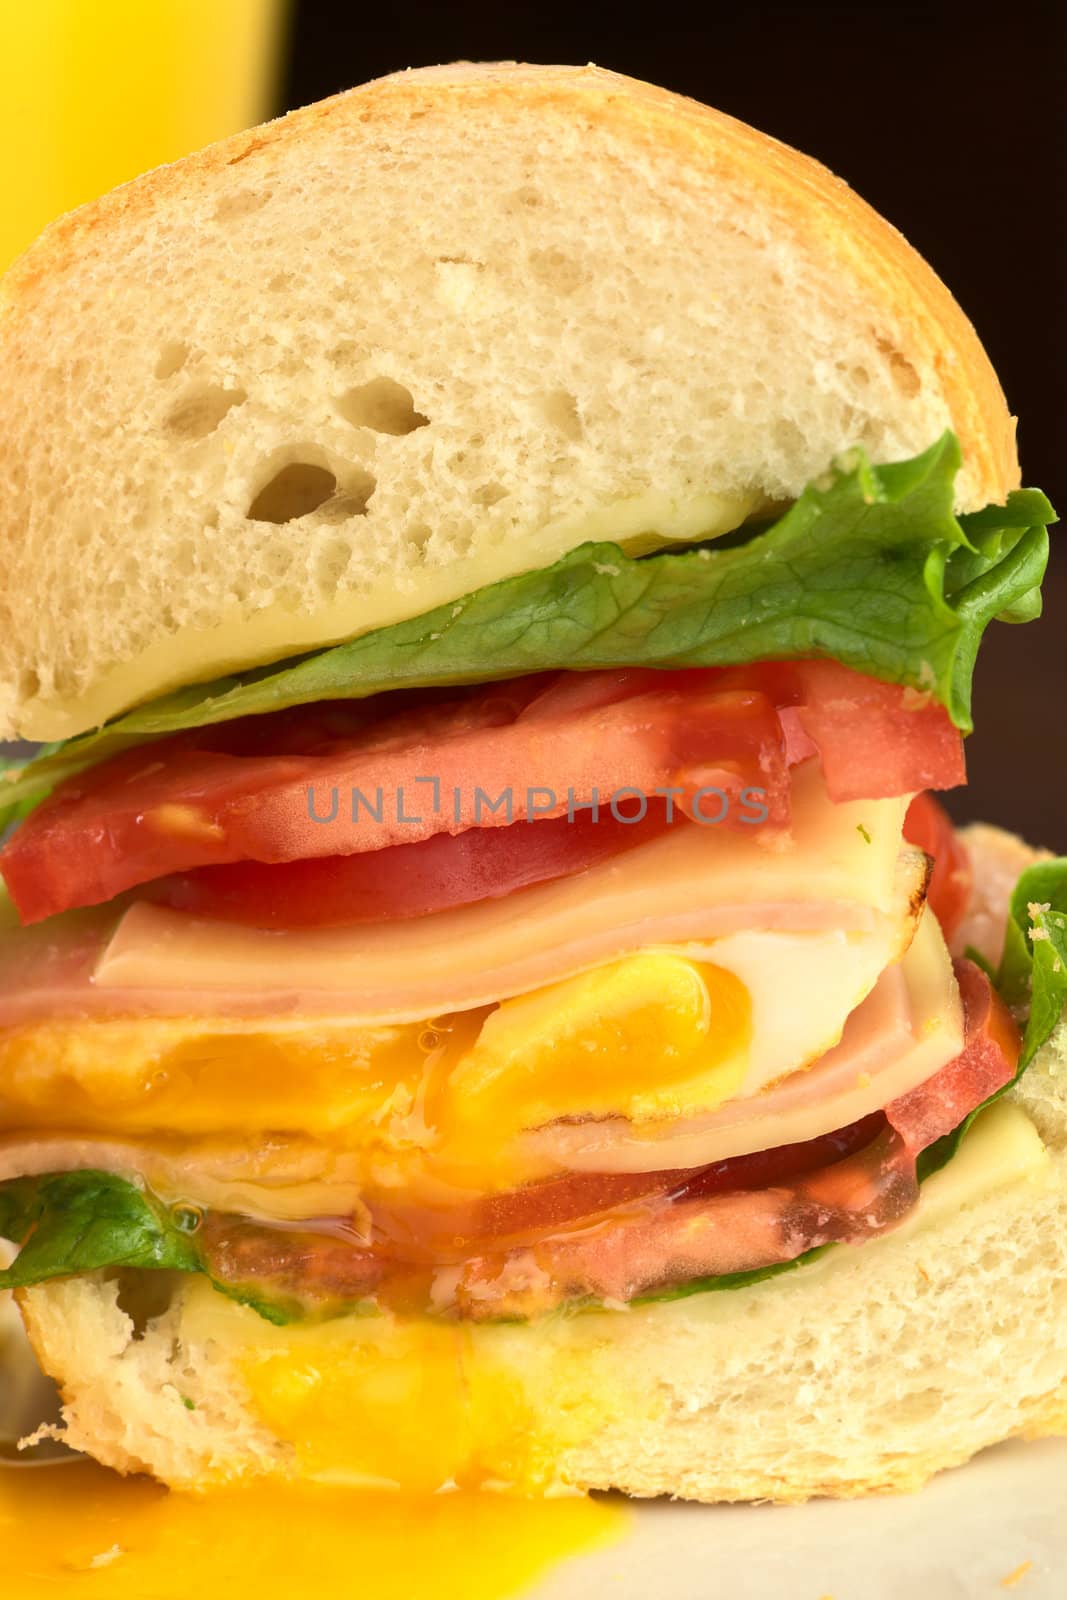 Sandwich with Fried Egg by ildi